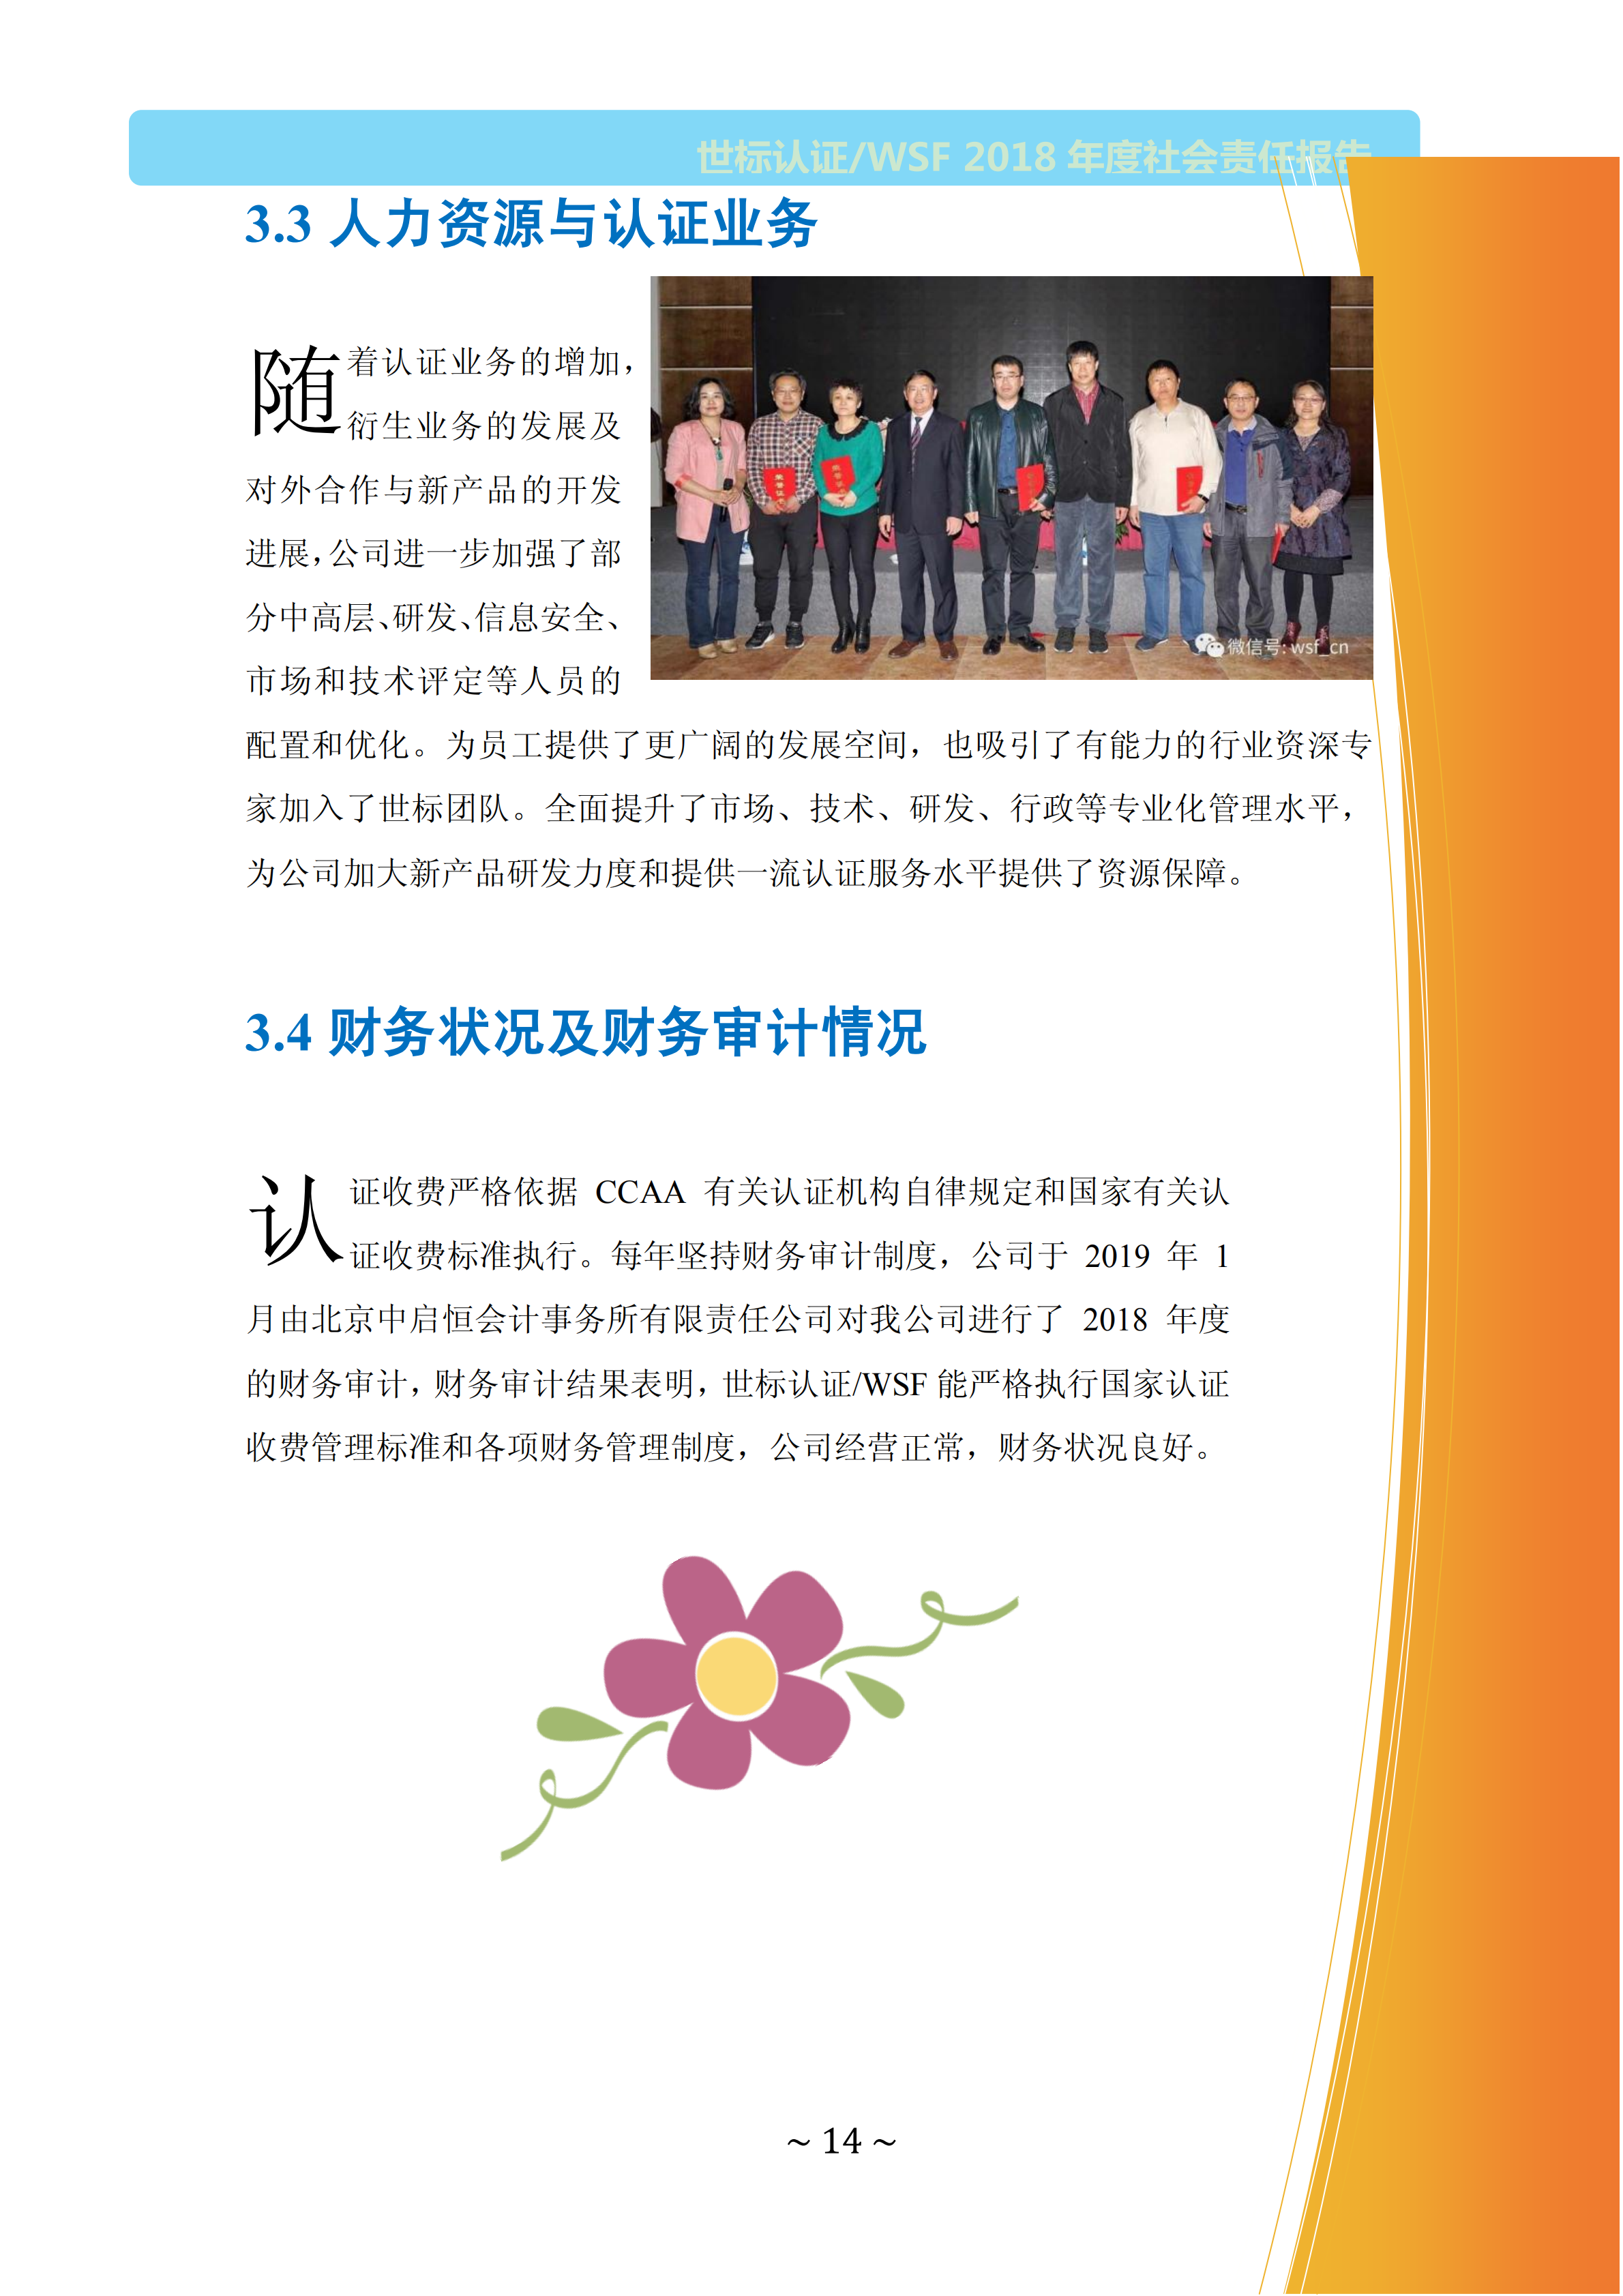  北京世标2018年社会责任报告(图14)